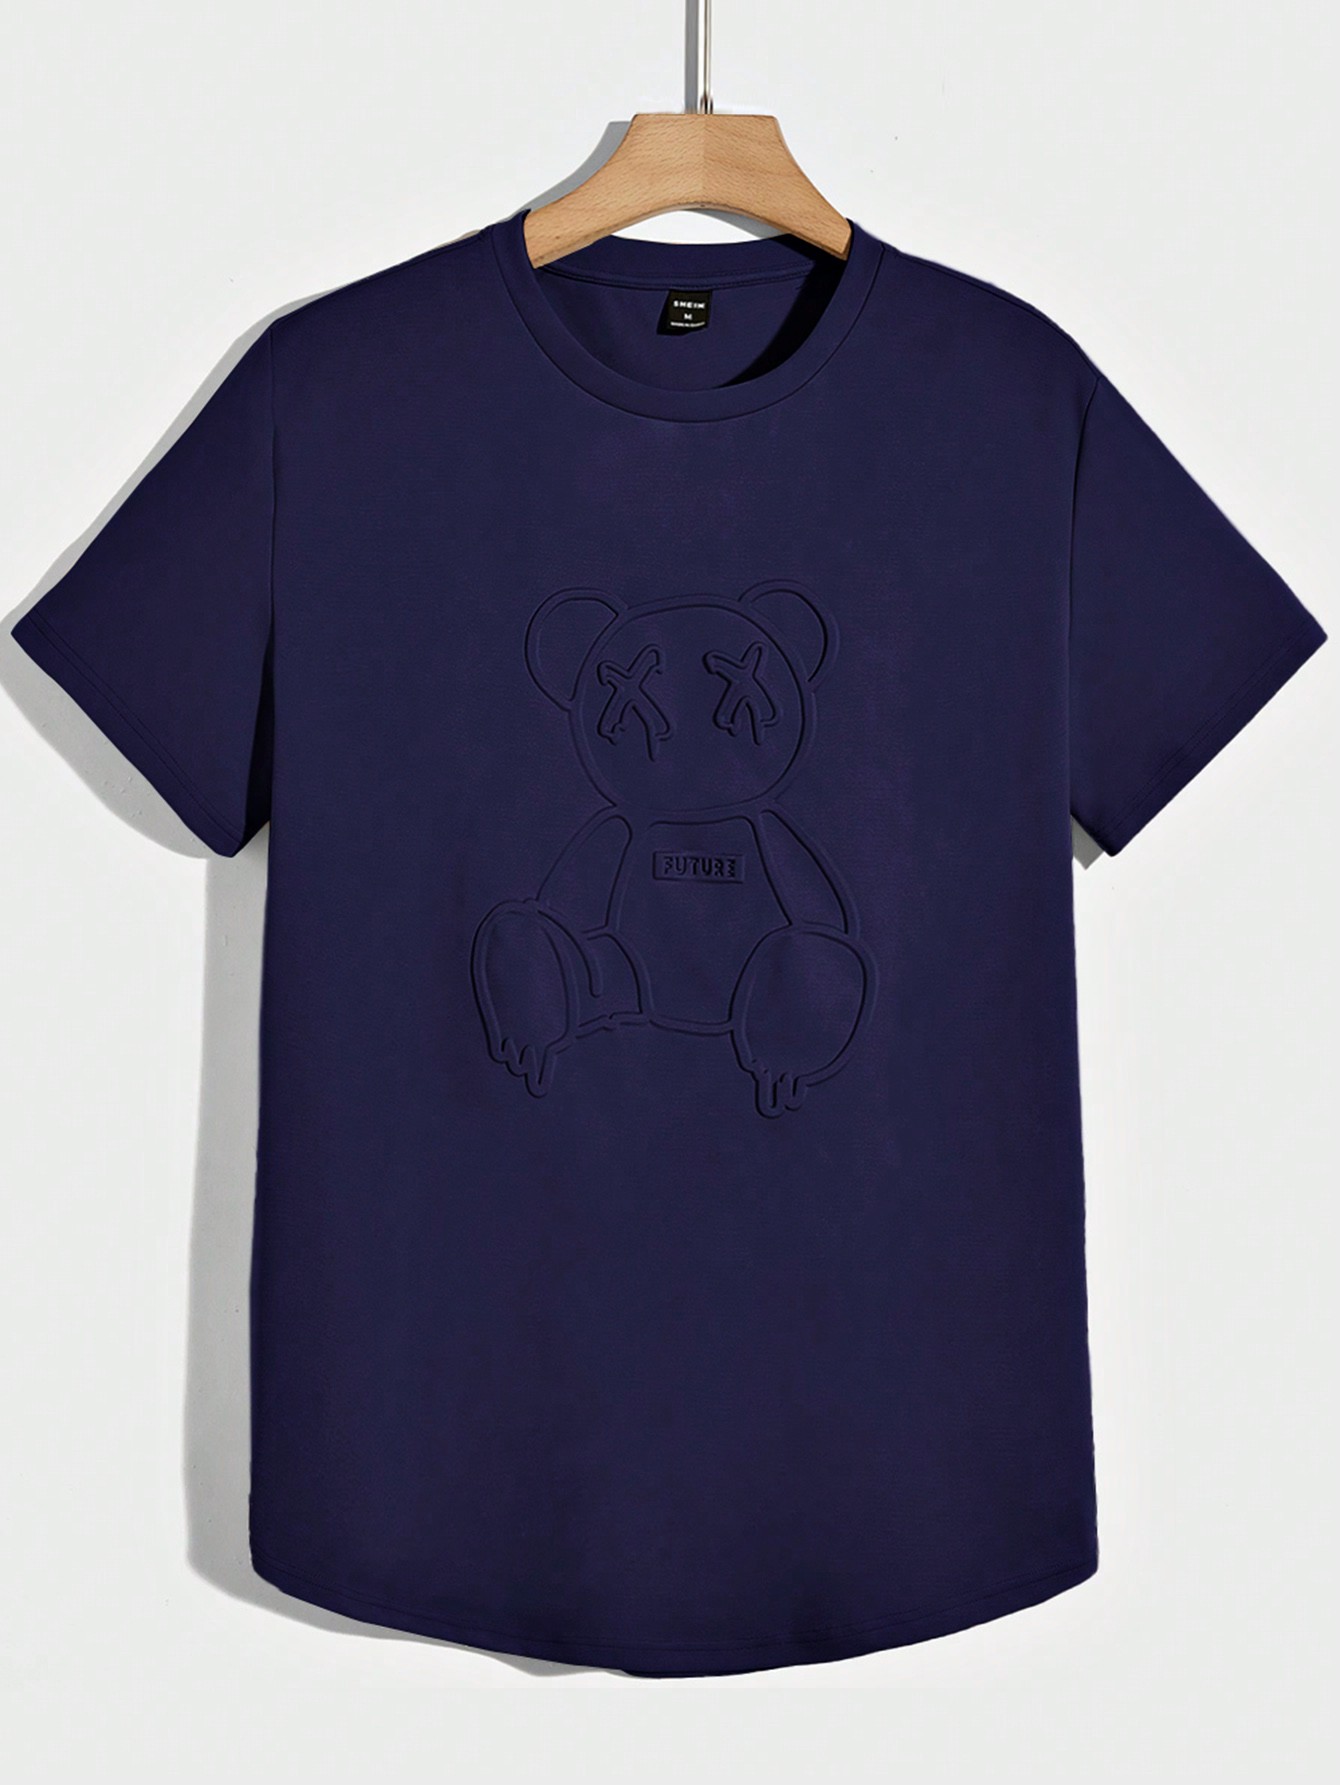 Мужская вязаная футболка Manfinity Hypemode с короткими рукавами и прессованным мишкой, темно-синий